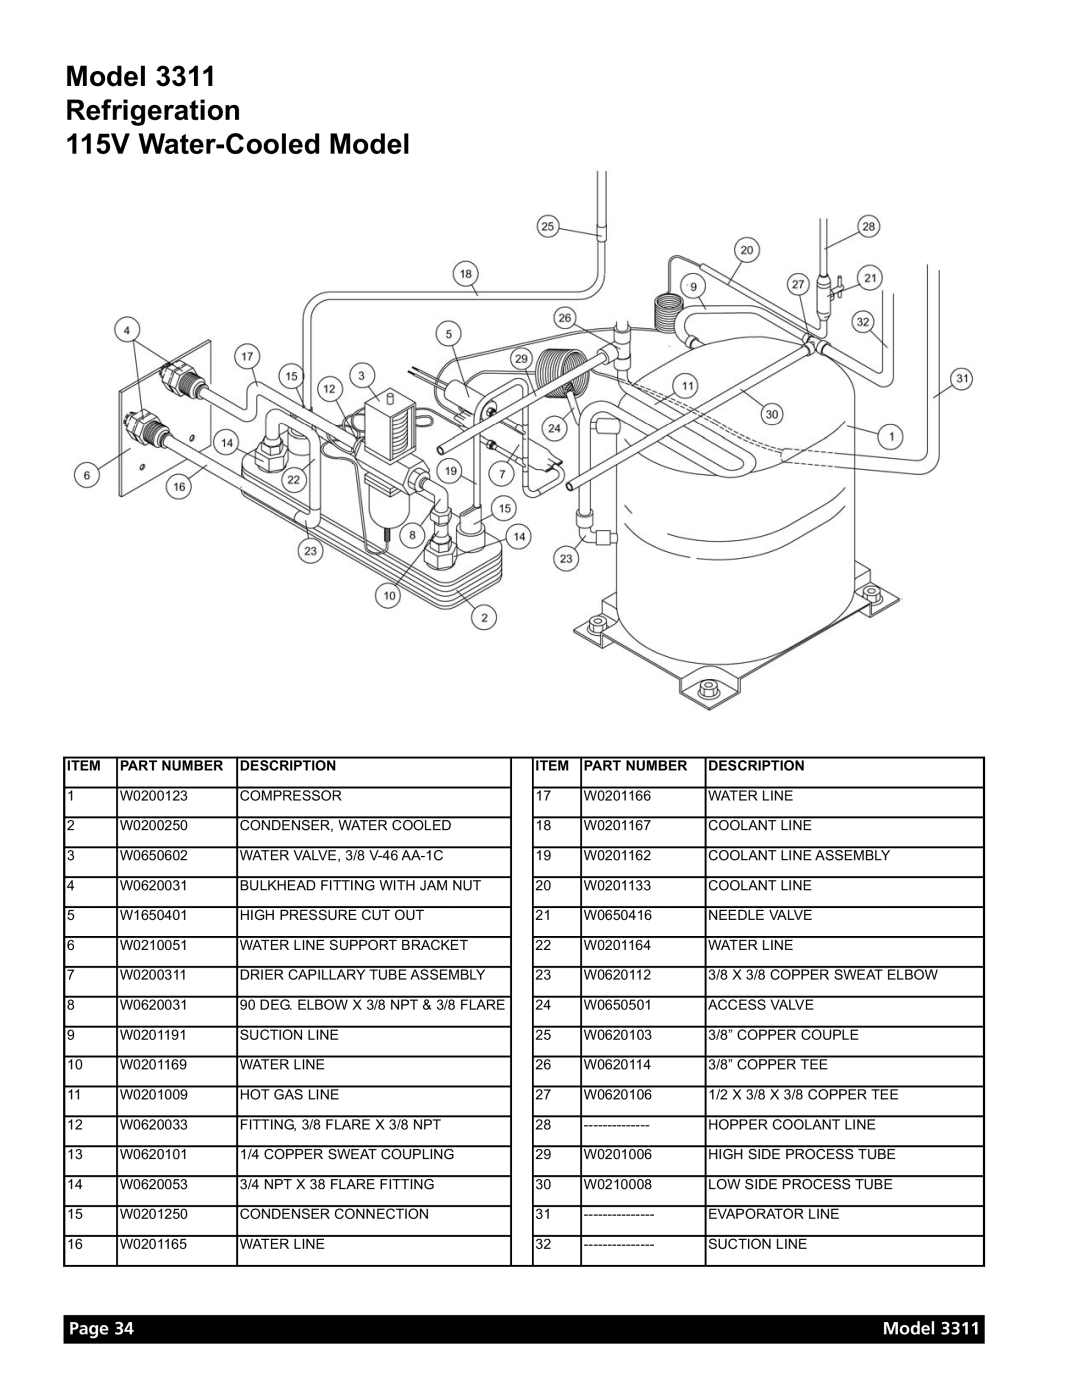 Grindmaster Model 3311 manual Model Refrigeration 115V Water-Cooled Model, Page, Part Number, Description 